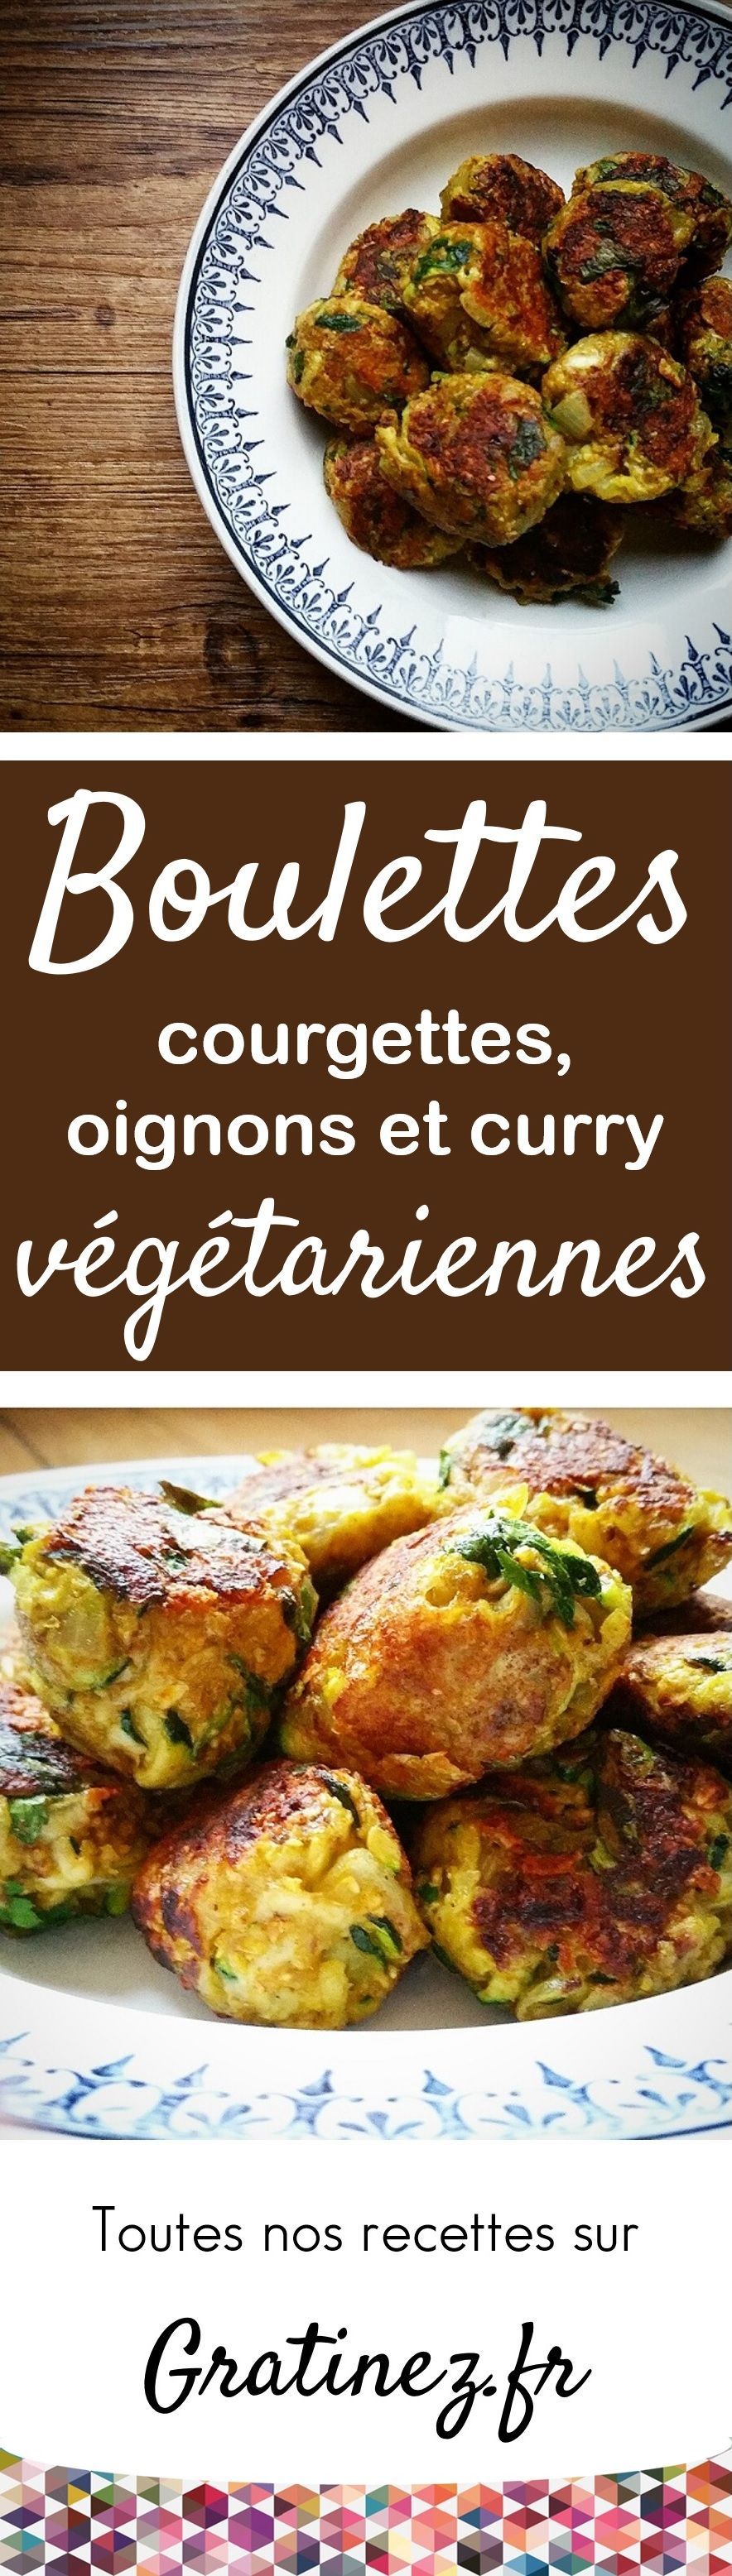 Boulettes végétariennes, courgettes, oignons et curry – Copyright © Gratinez